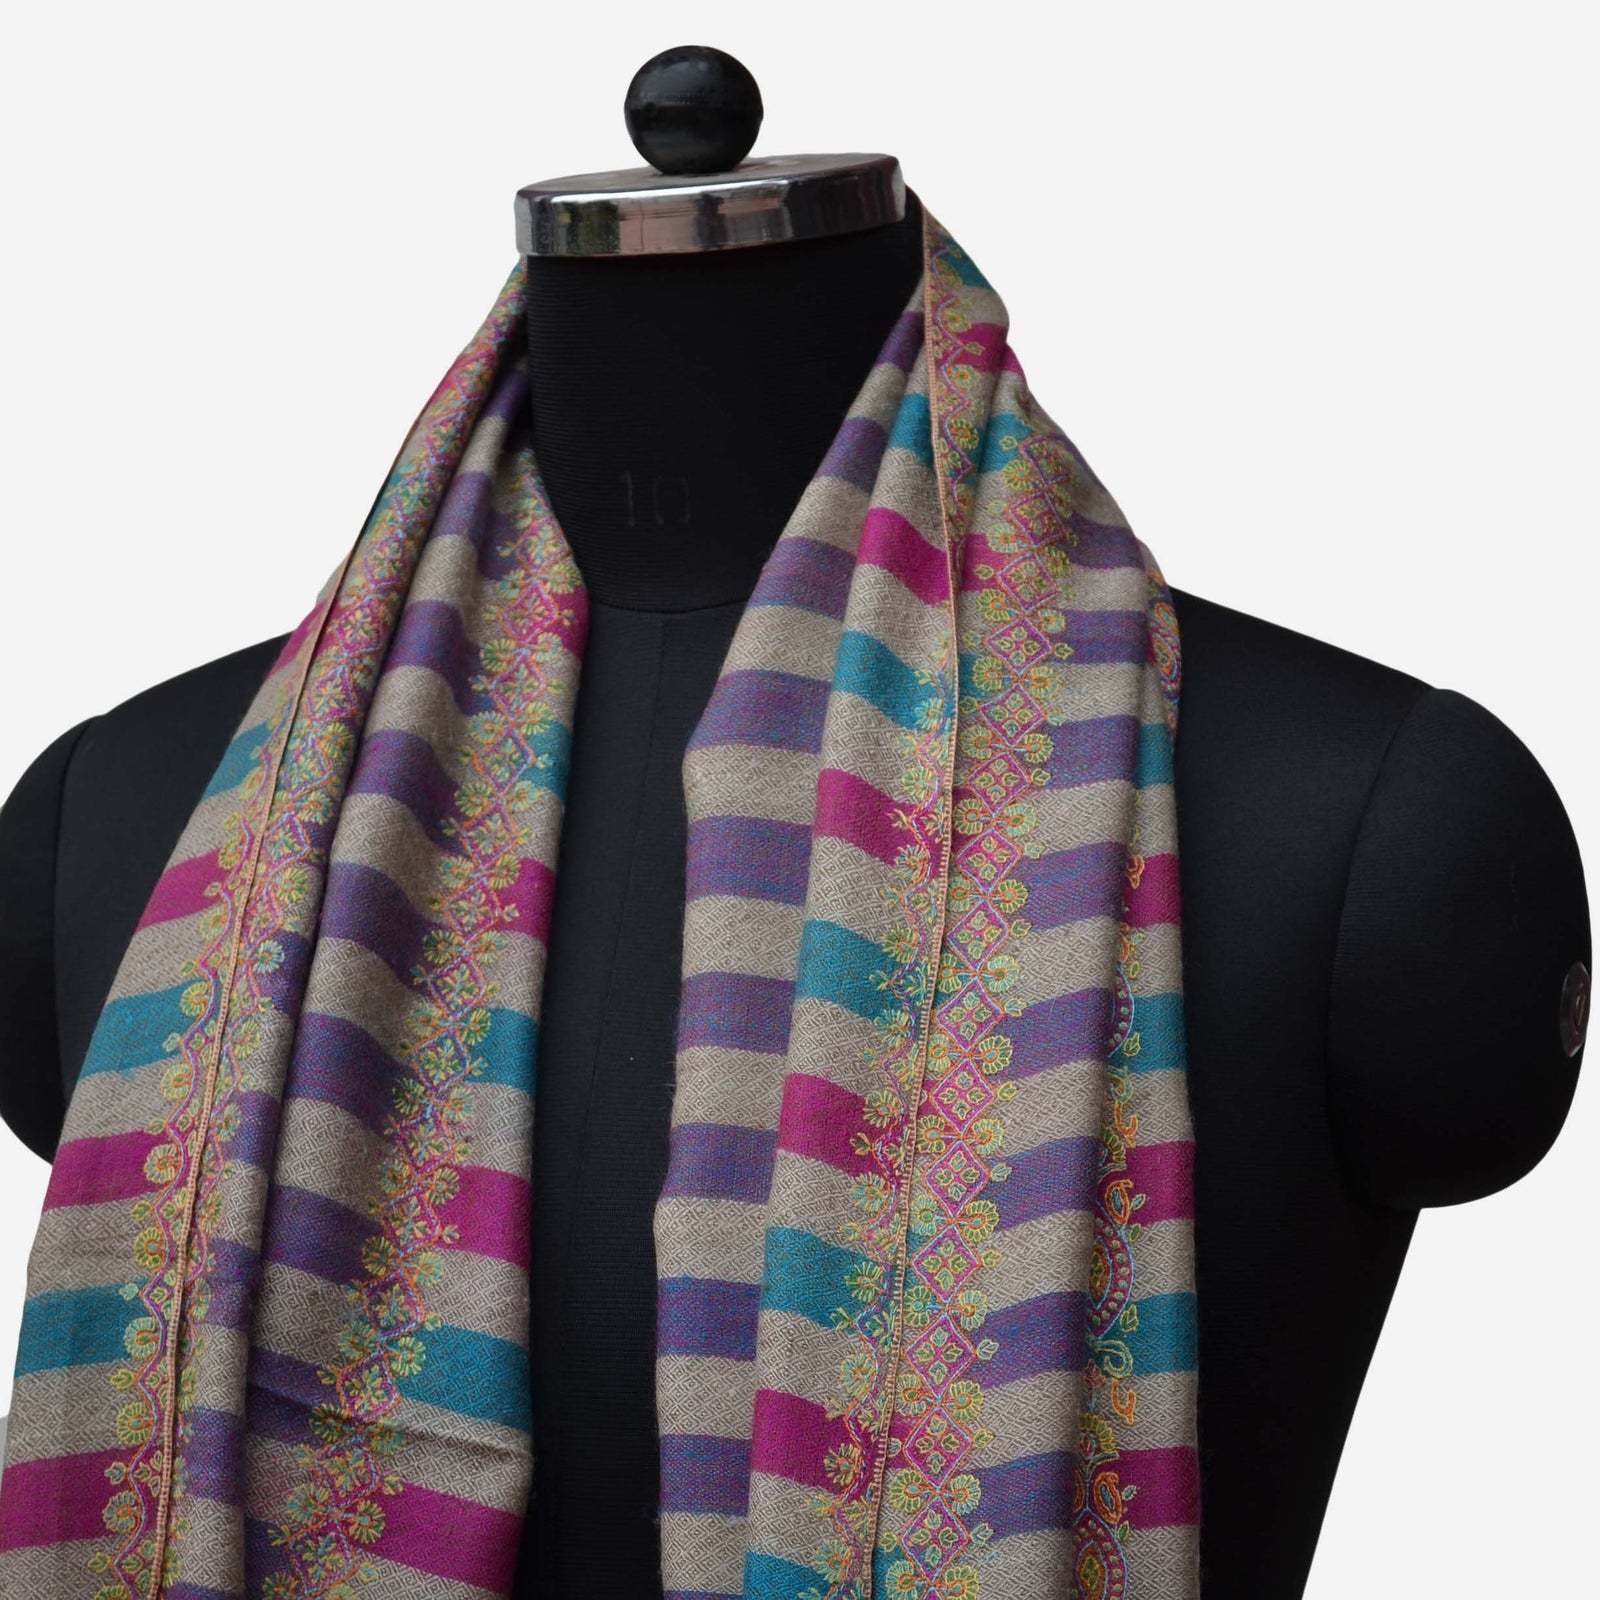 shop online for authentic purple pashmina shawl